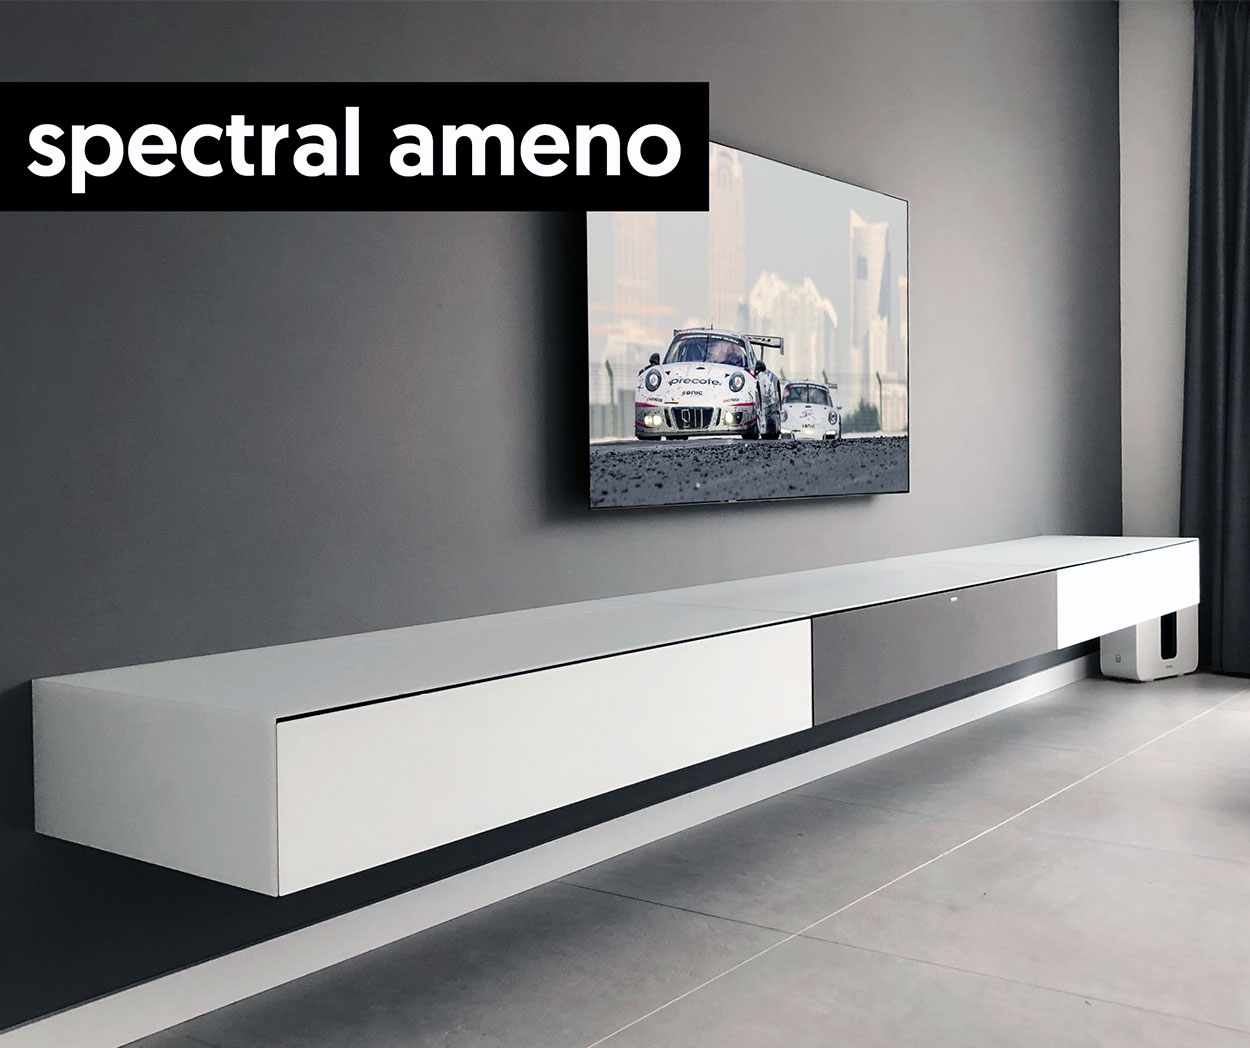 Ik heb een Engelse les pantoffel Subjectief Spectral tv meubels met speakerdoek - Spectral.nl